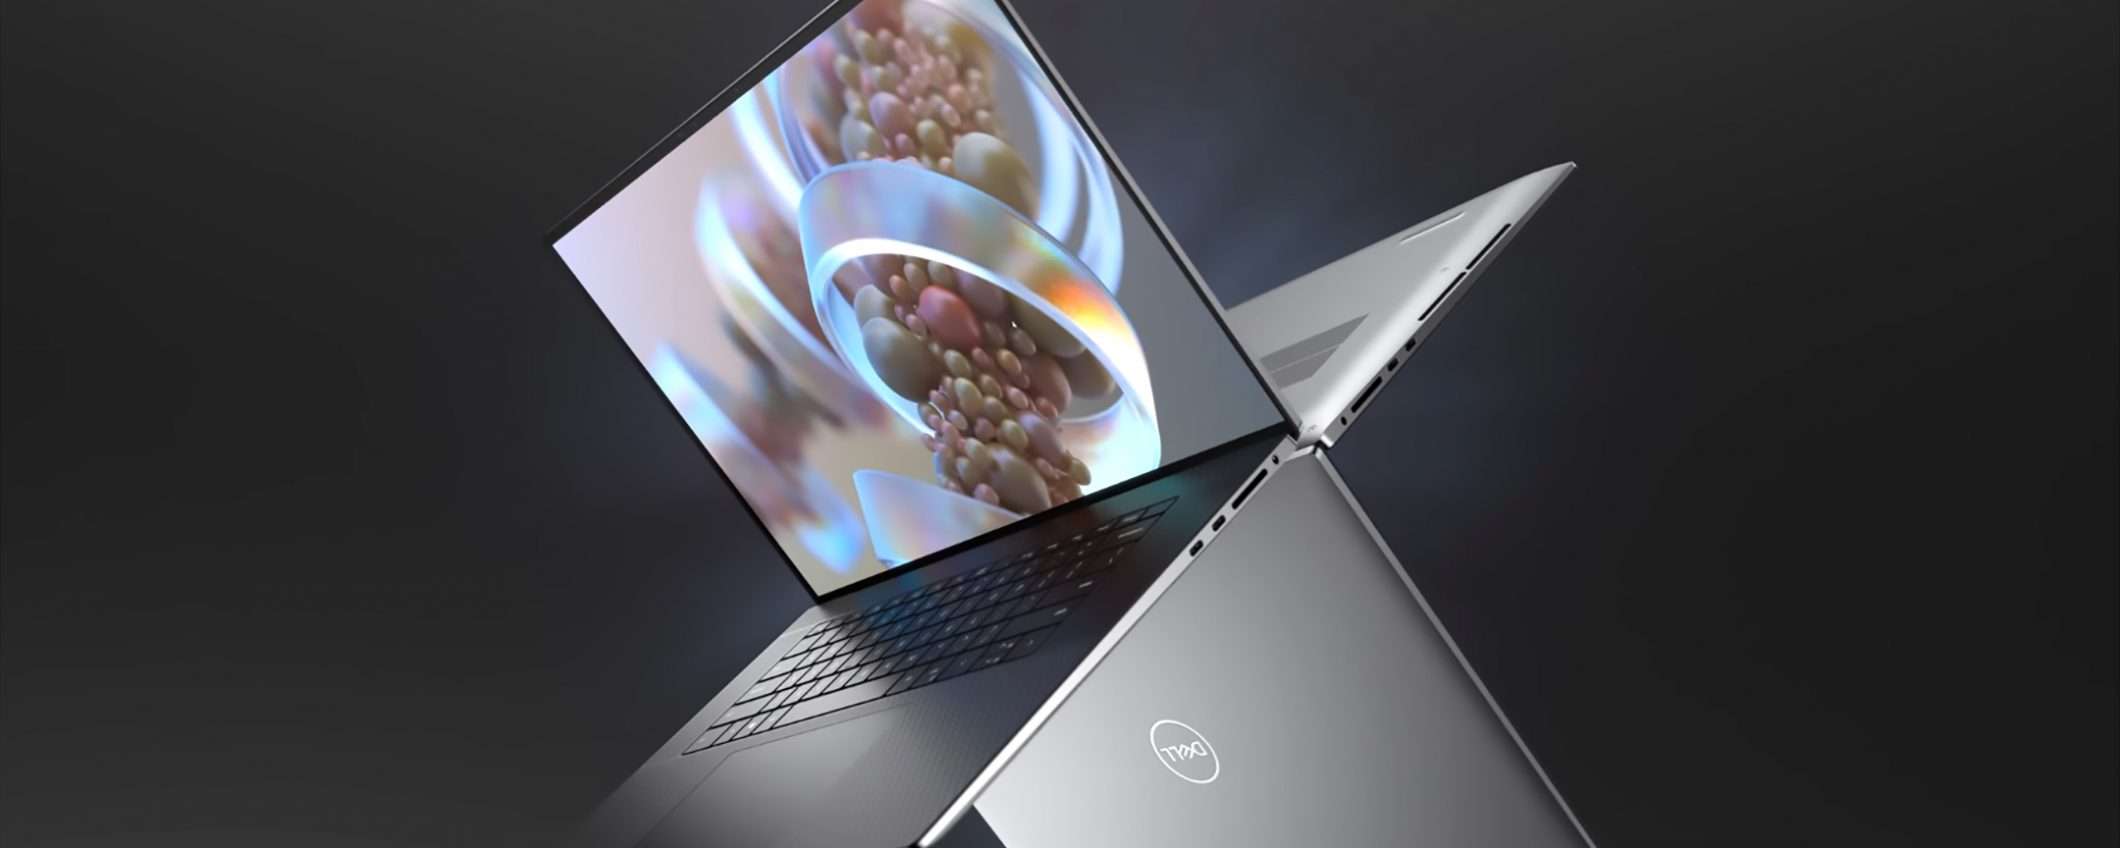 Dell annuncia i nuovi laptop XPS 15 e XPS 17